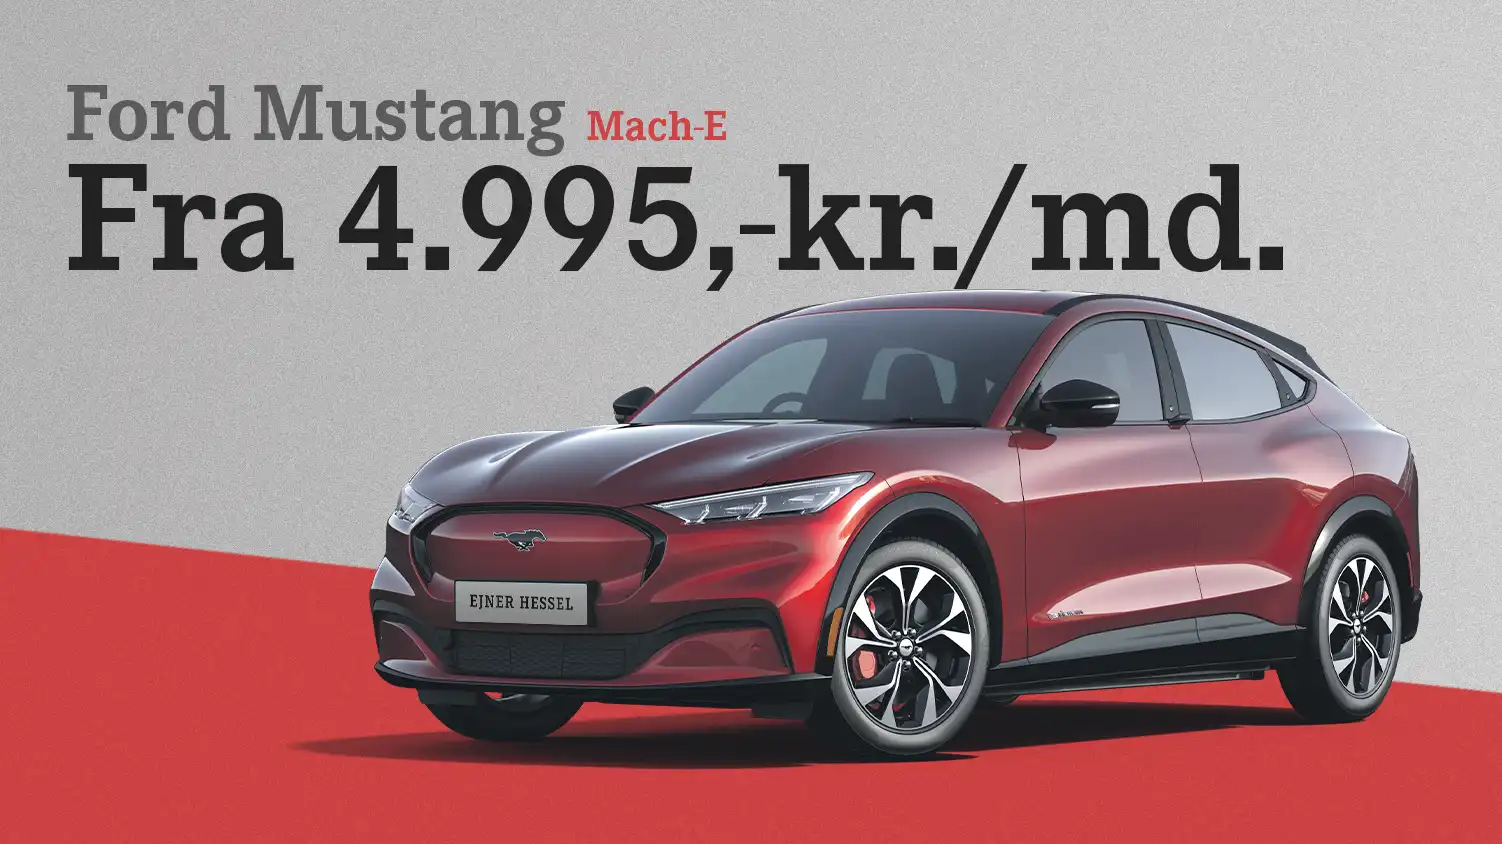 Kør elektrisk Mustang fra kun 4.995 kr/md.!